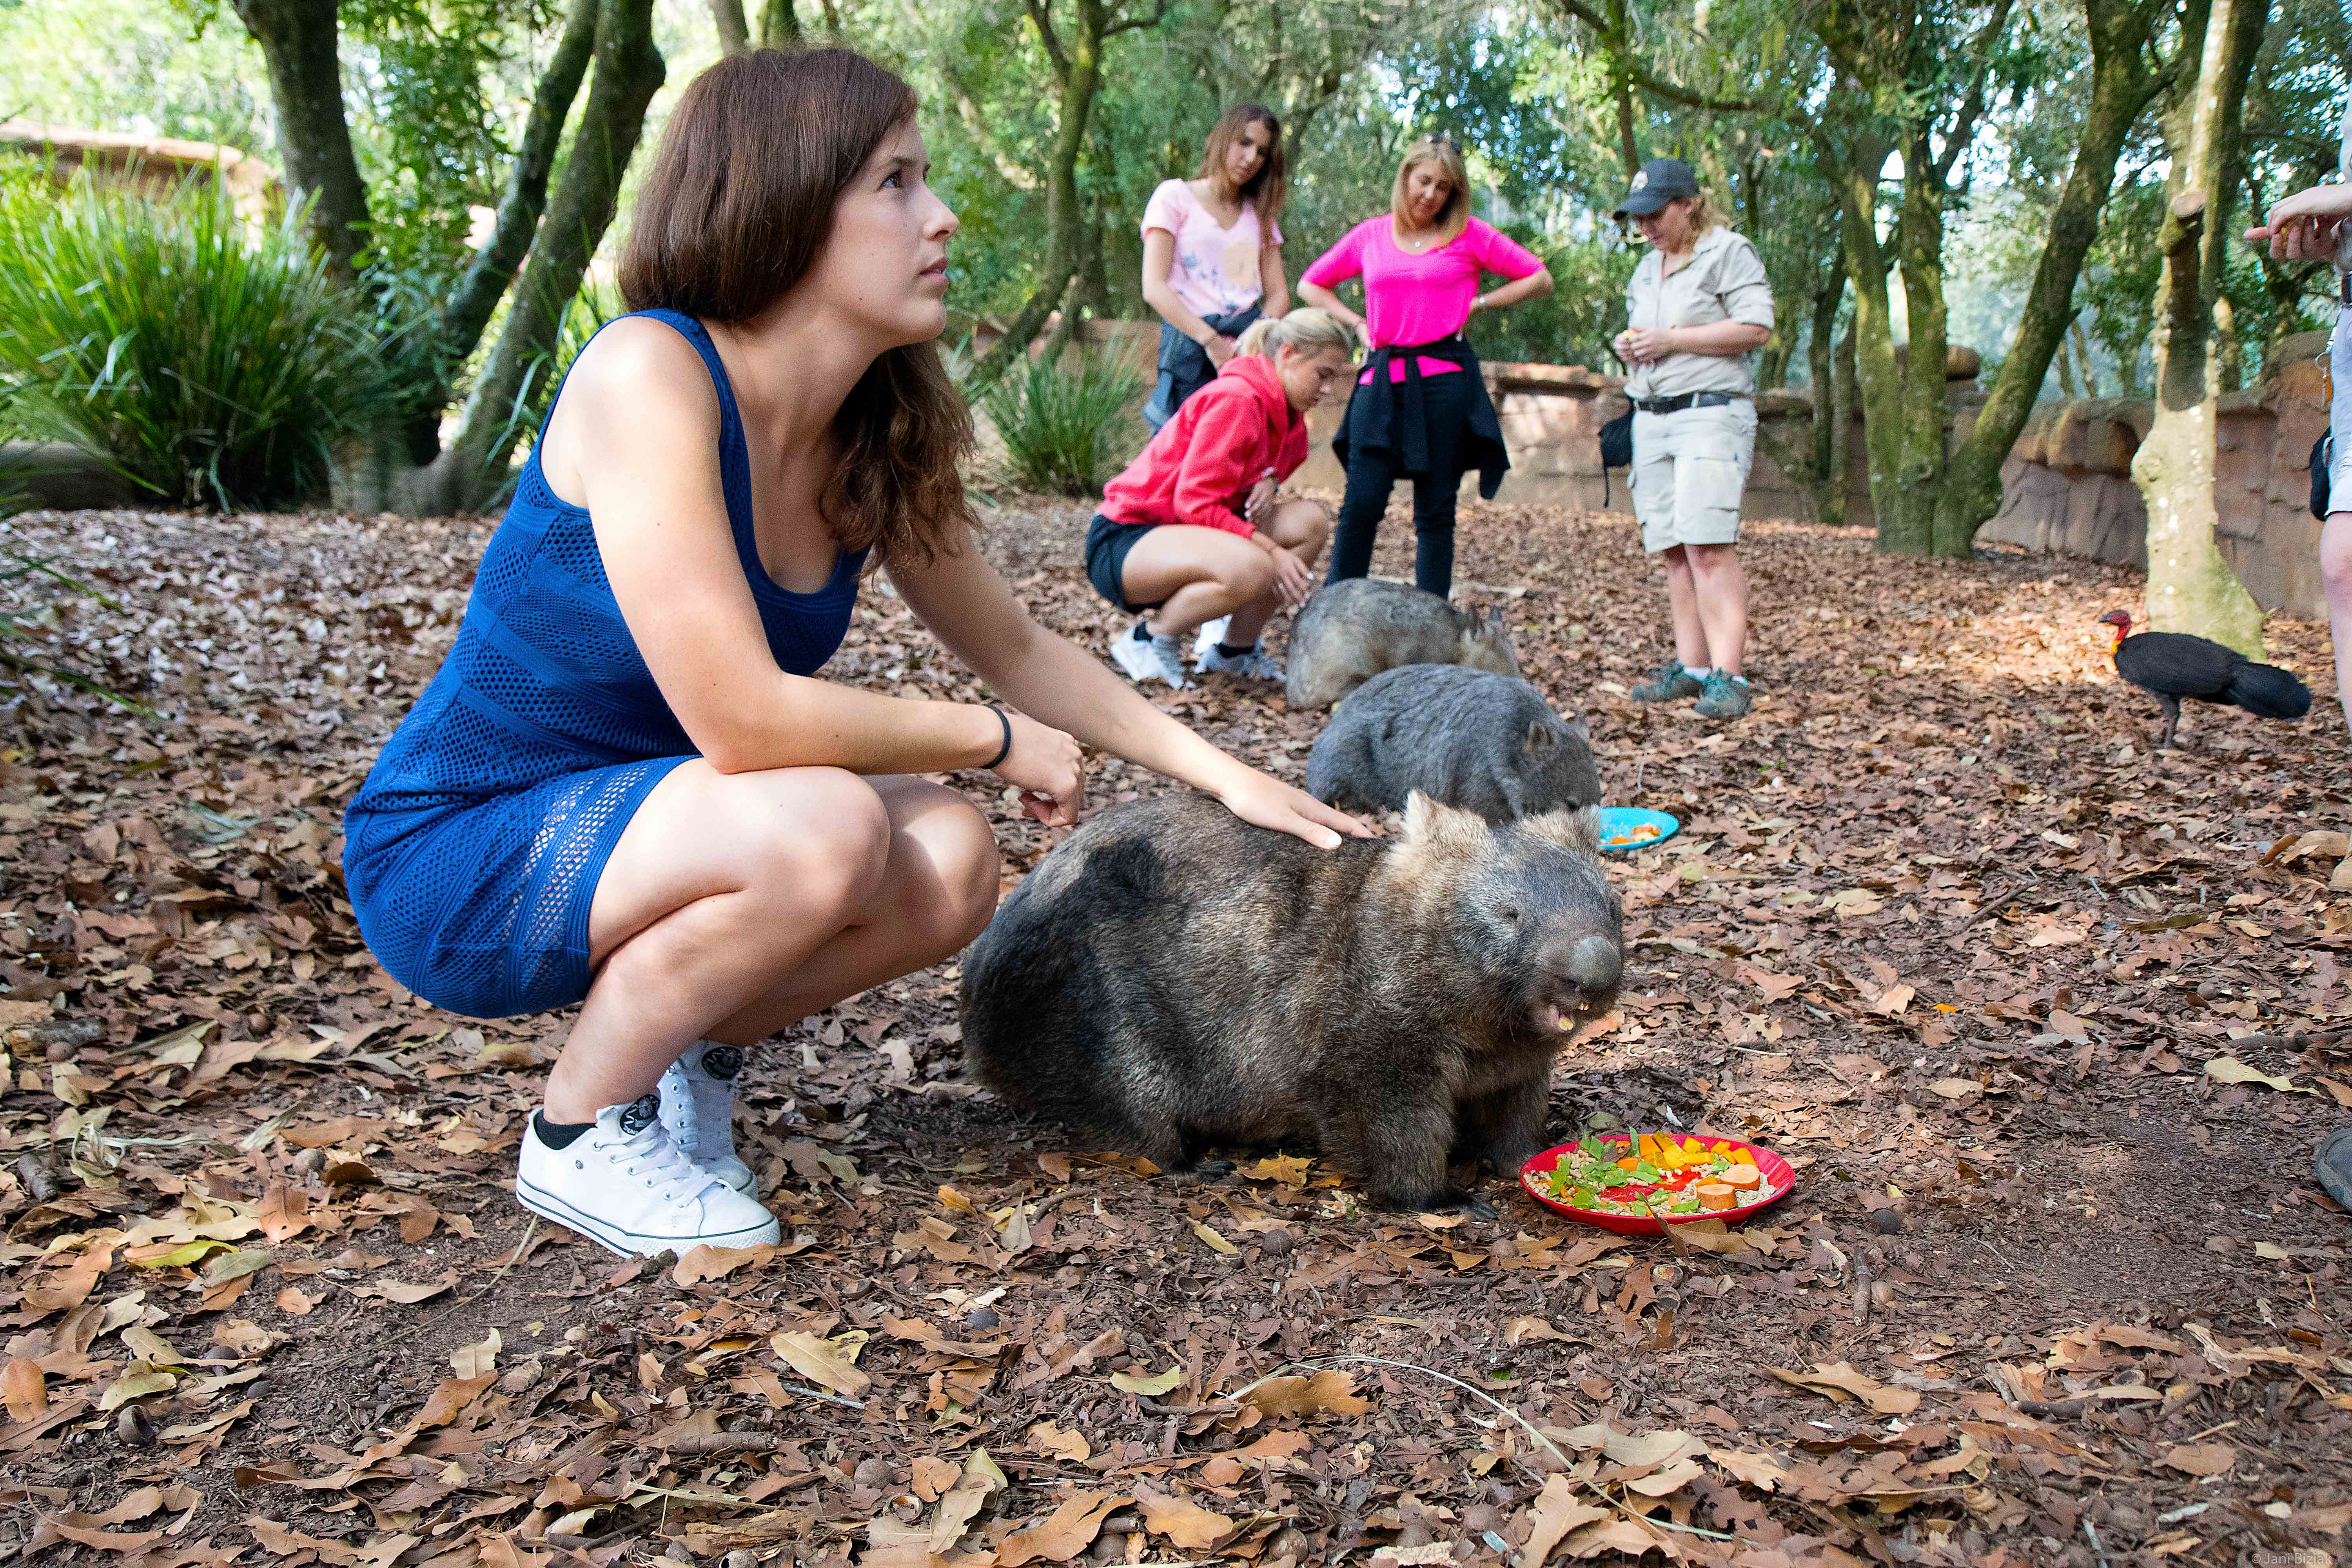 Wombat encounter